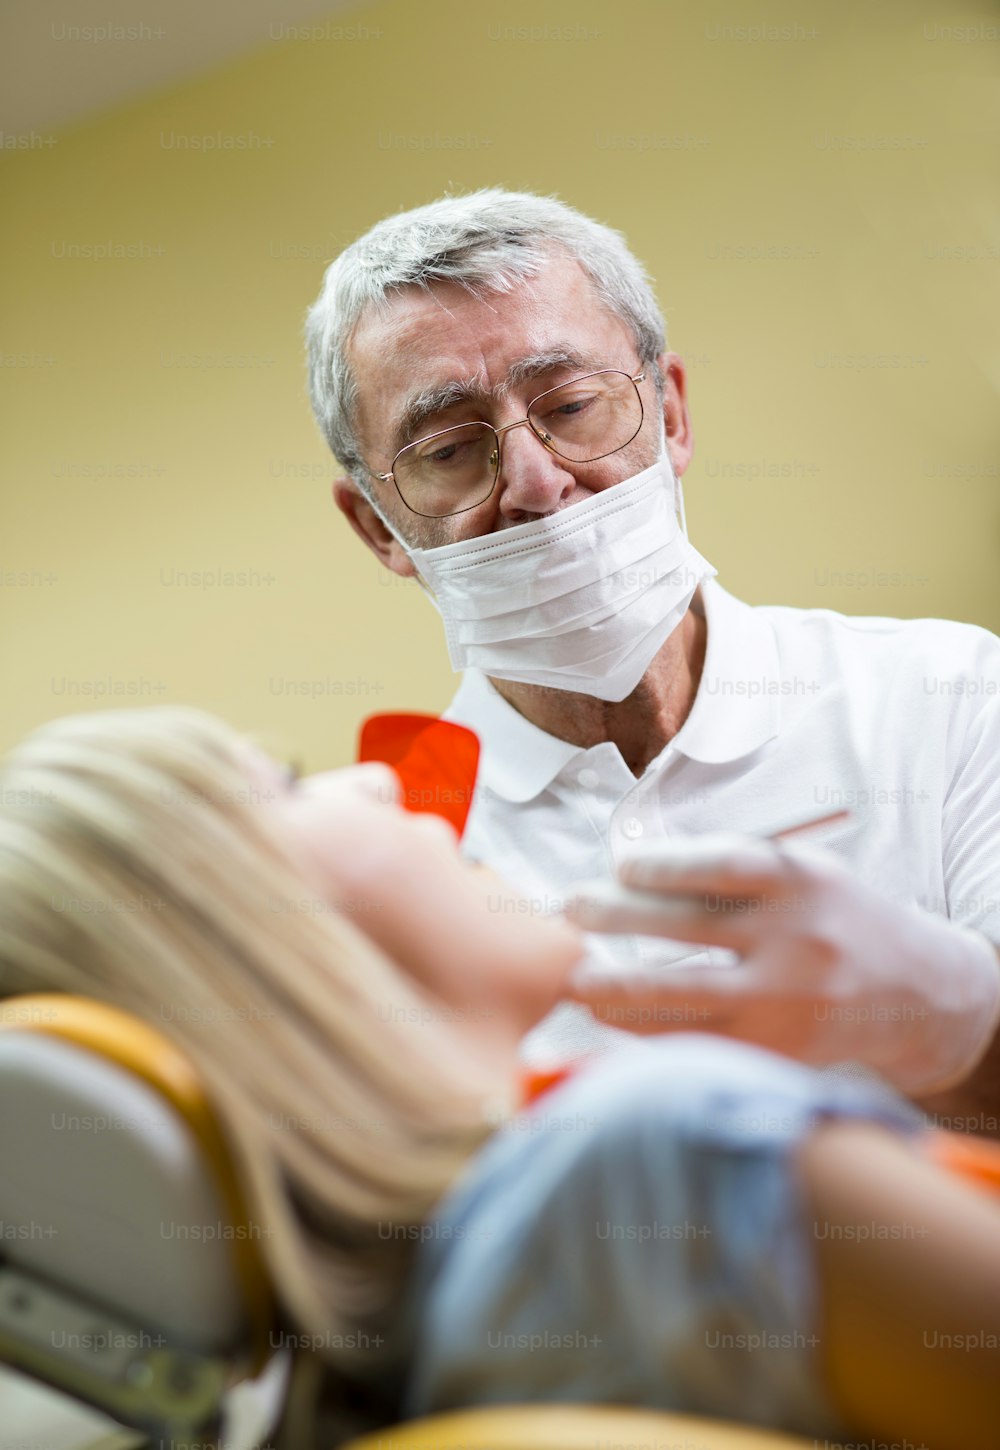 El paciente está recibiendo un tratamiento dental